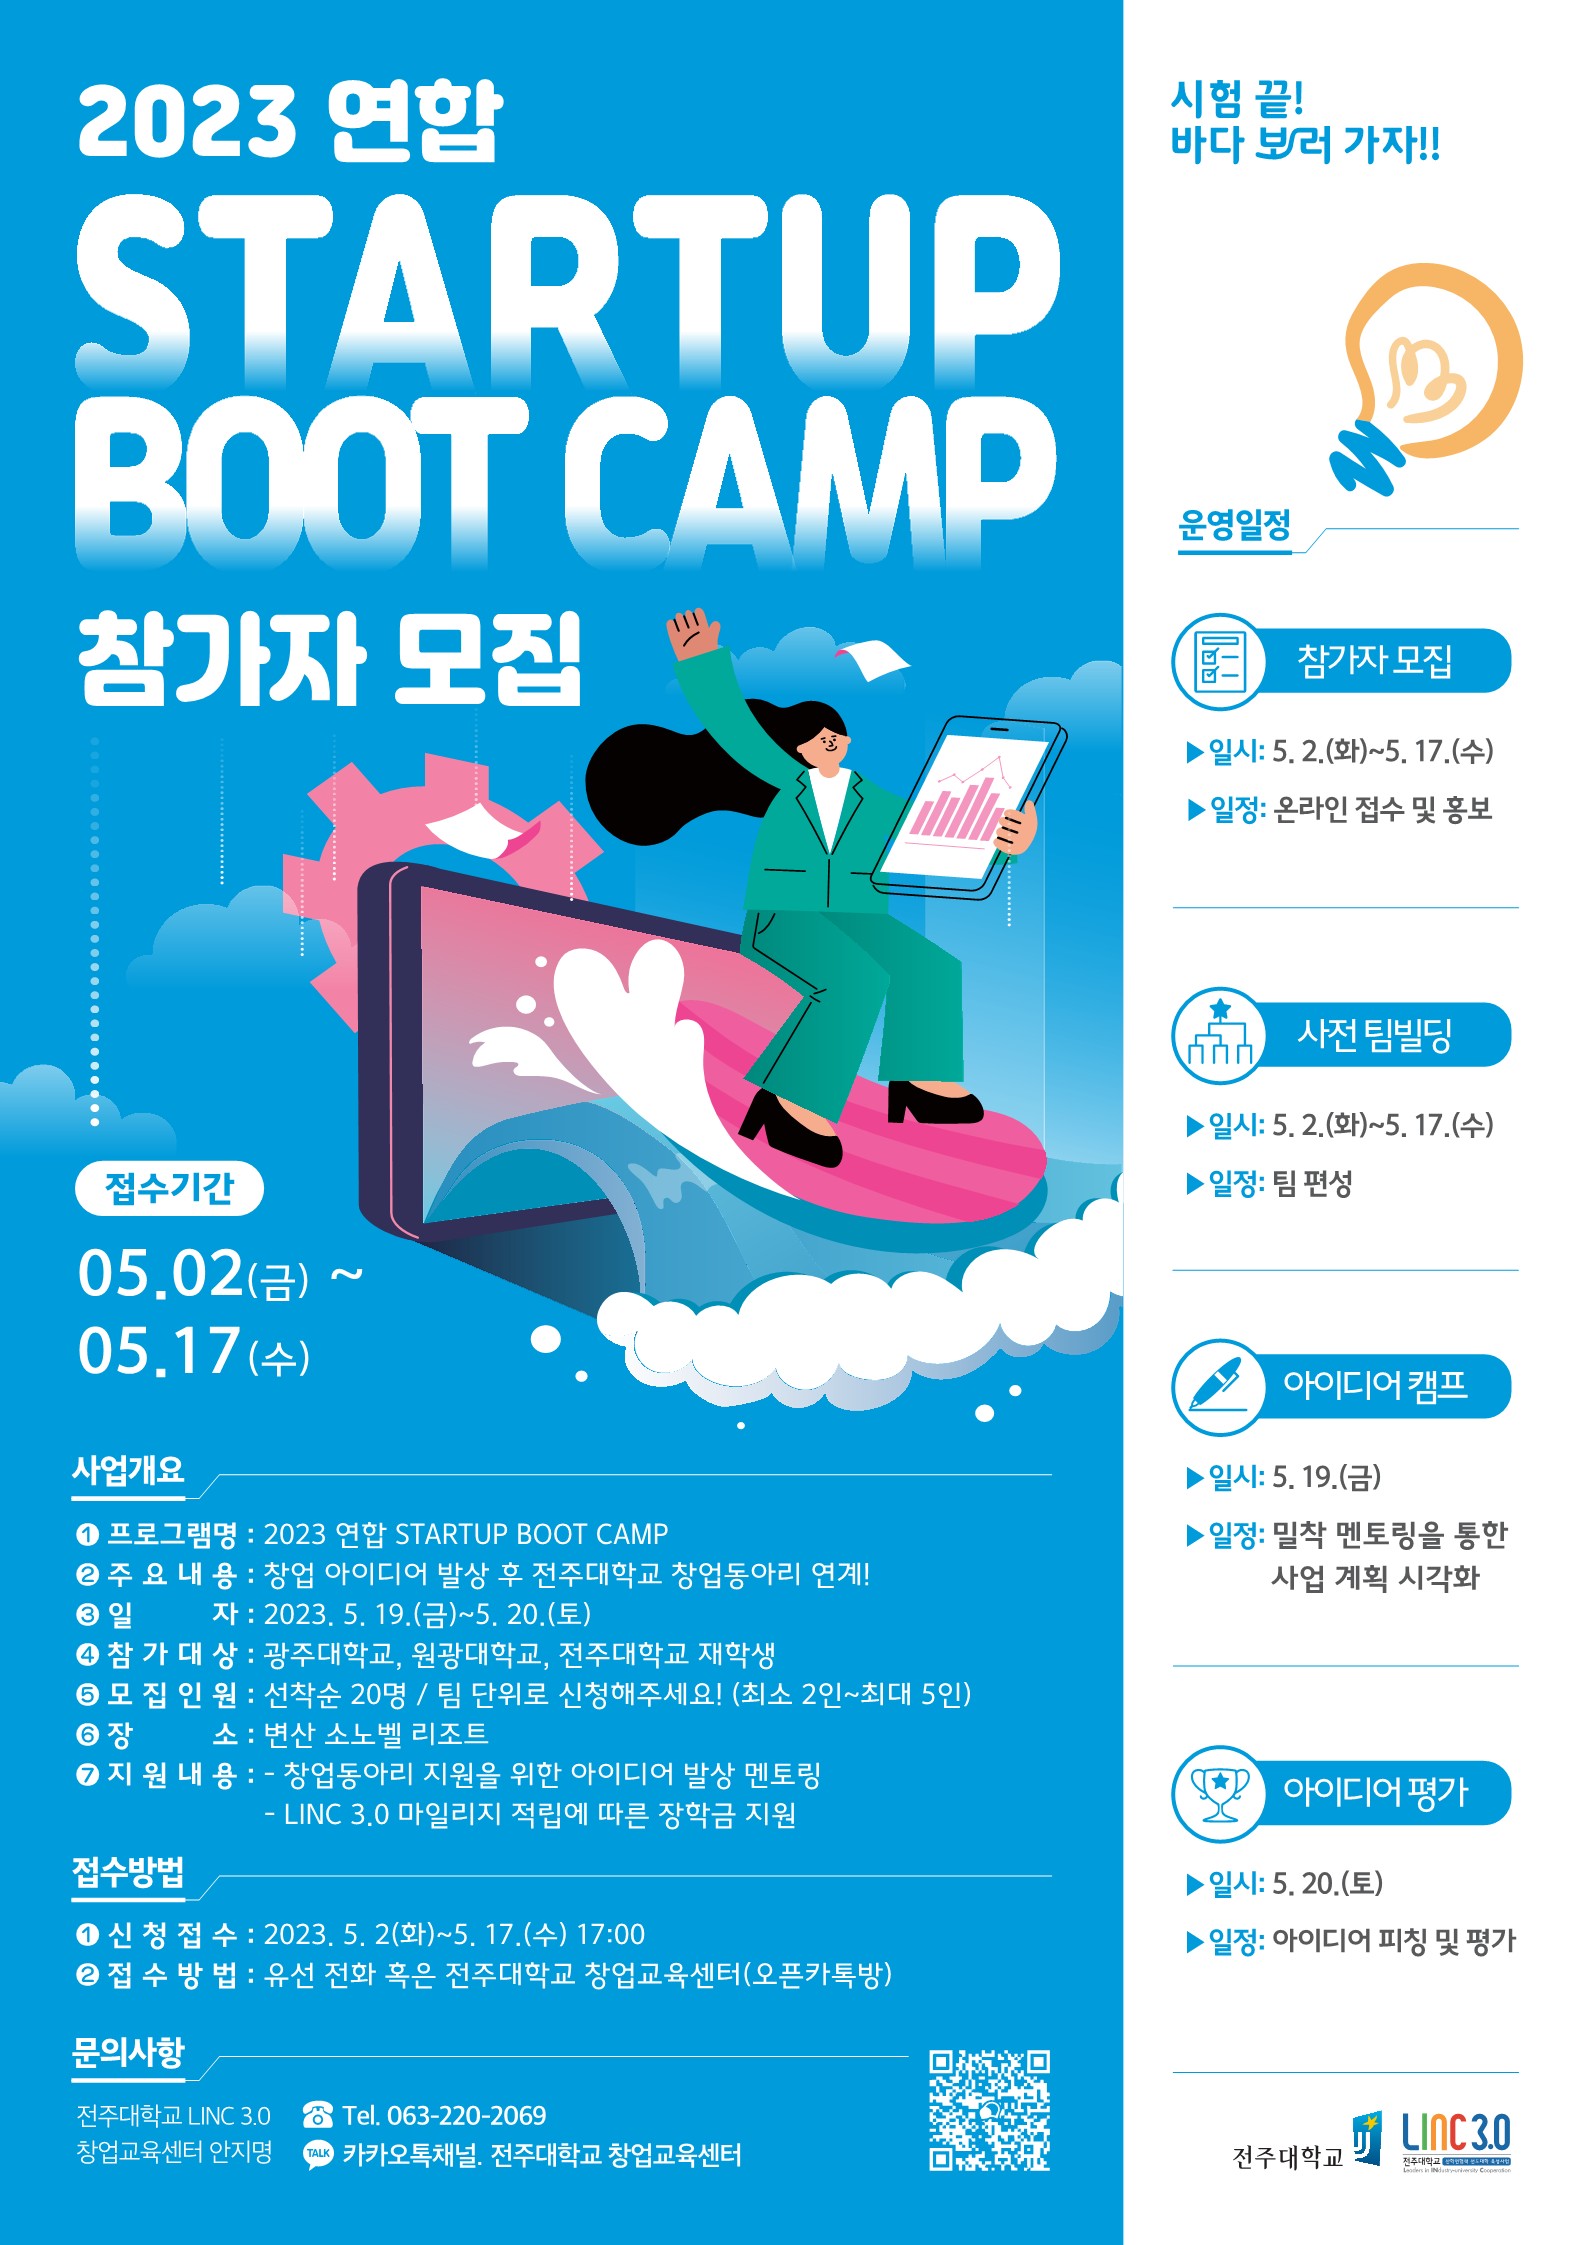  전주대) 2023 STARTUP BOOT CAMP 참가자모집 포스터_1.jpg